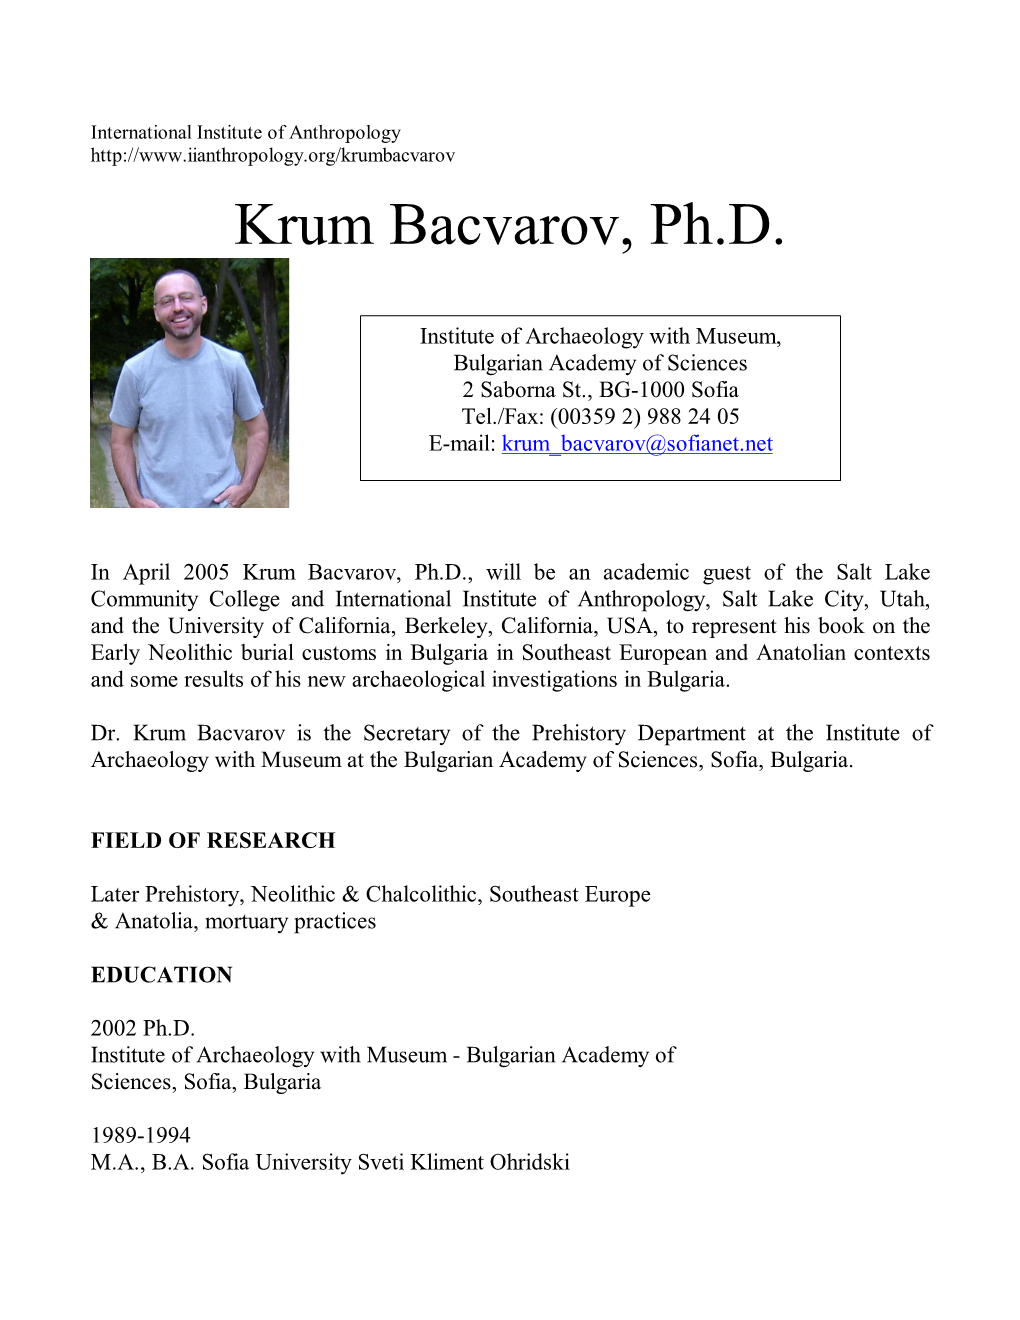 Krum Bacvarov, Ph.D